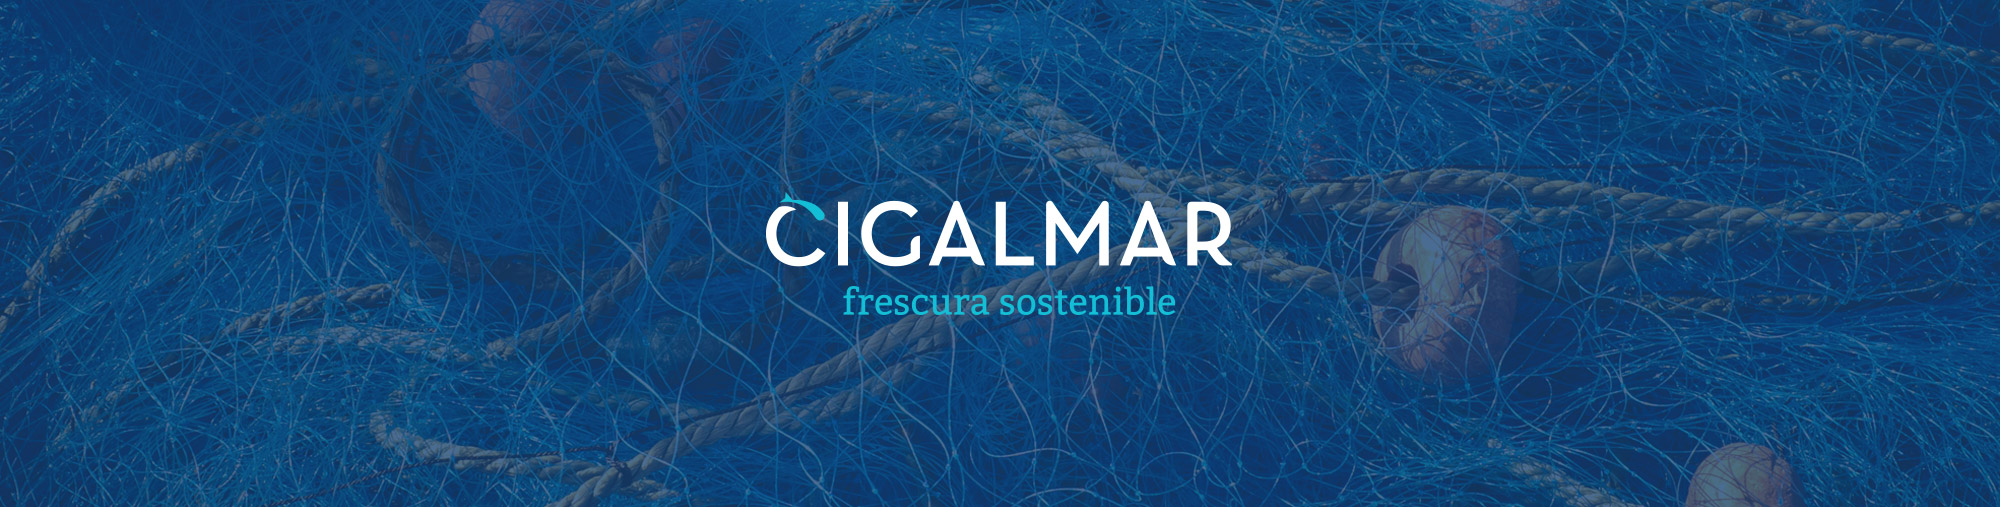 Logotipo en blanco sobre azul de cigalmar, que se muestra sobre una imagen de redes de pesca de la empresa gallega.